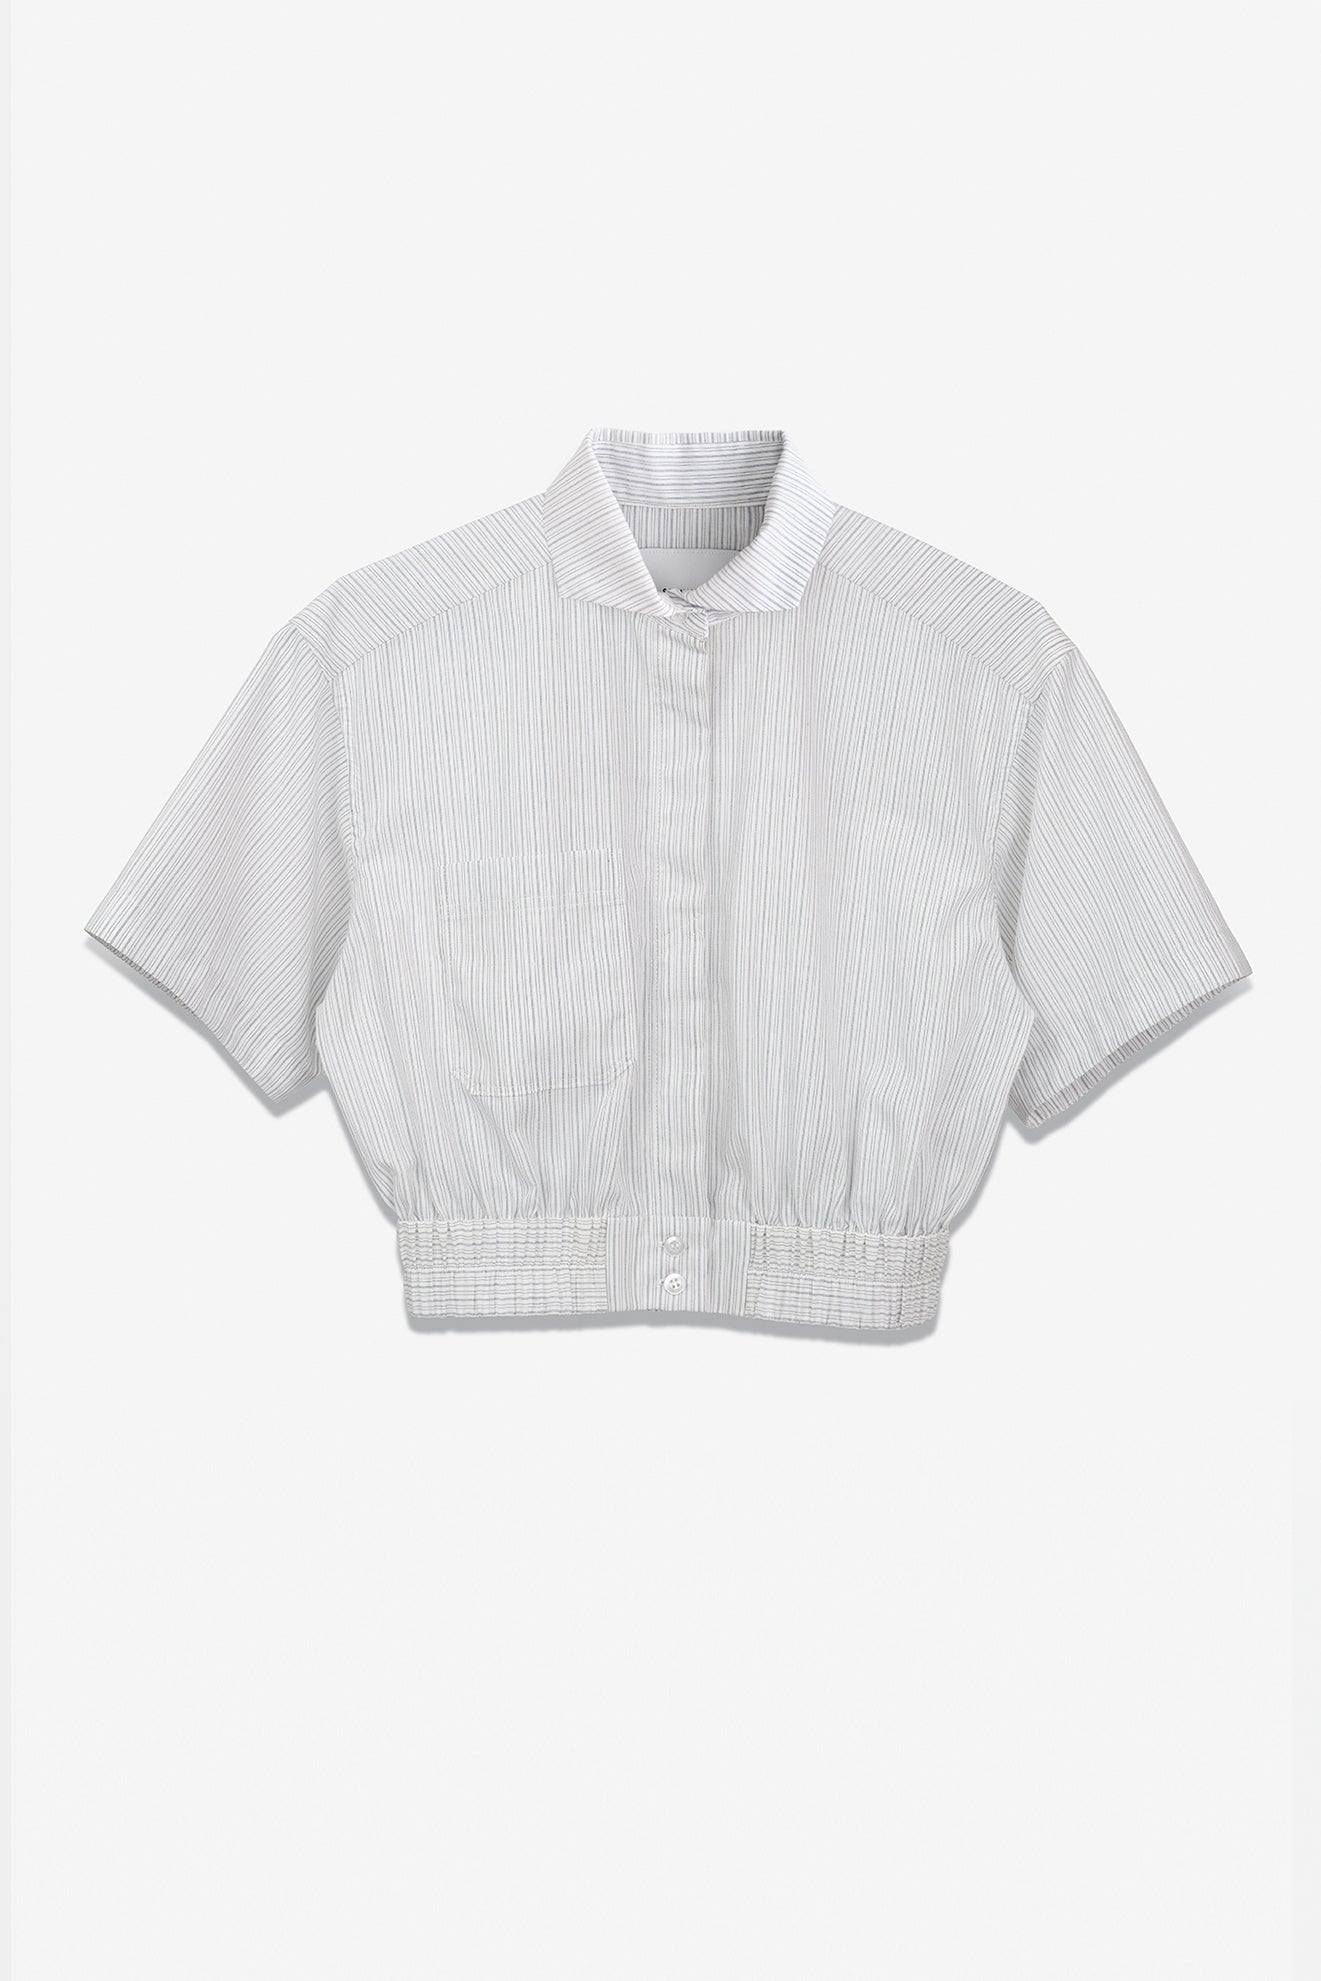 SEANNUNG - WOMEN -  Striped Pattern Short Shirt 條紋短袖外套式襯衫